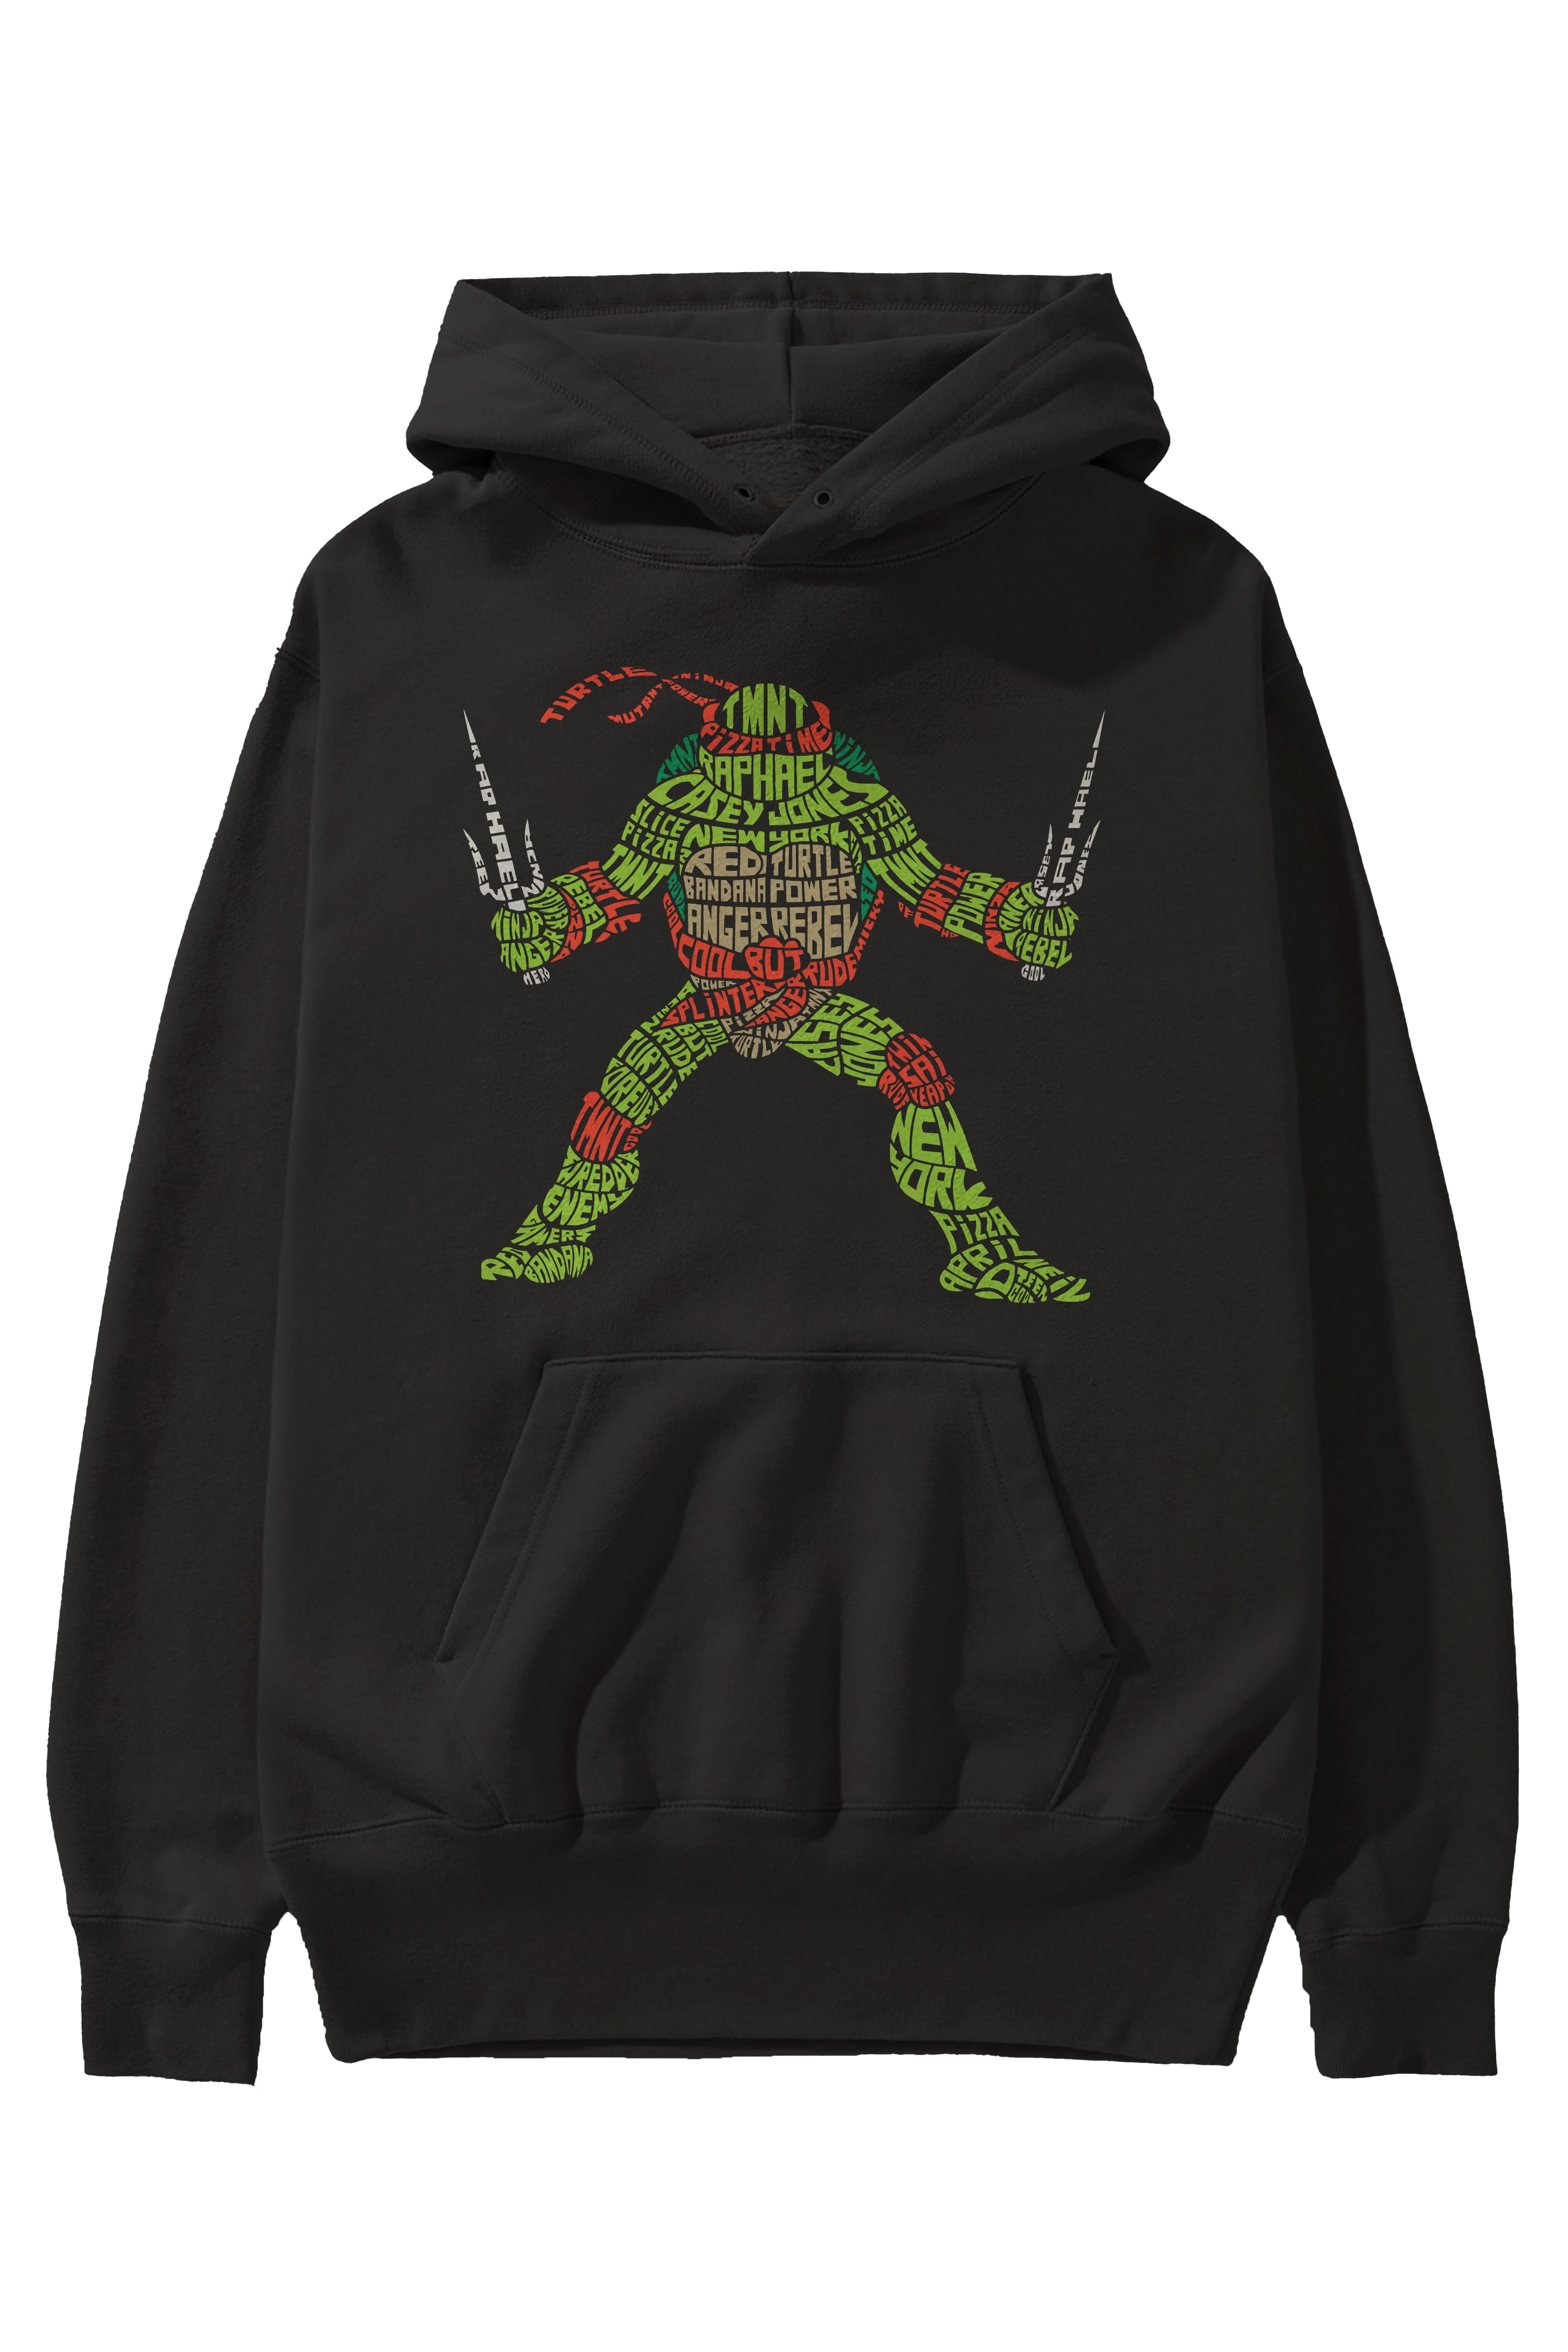 Ninja Turtle Ön Baskılı Hoodie Oversize Kapüşonlu Sweatshirt Erkek Kadın Unisex